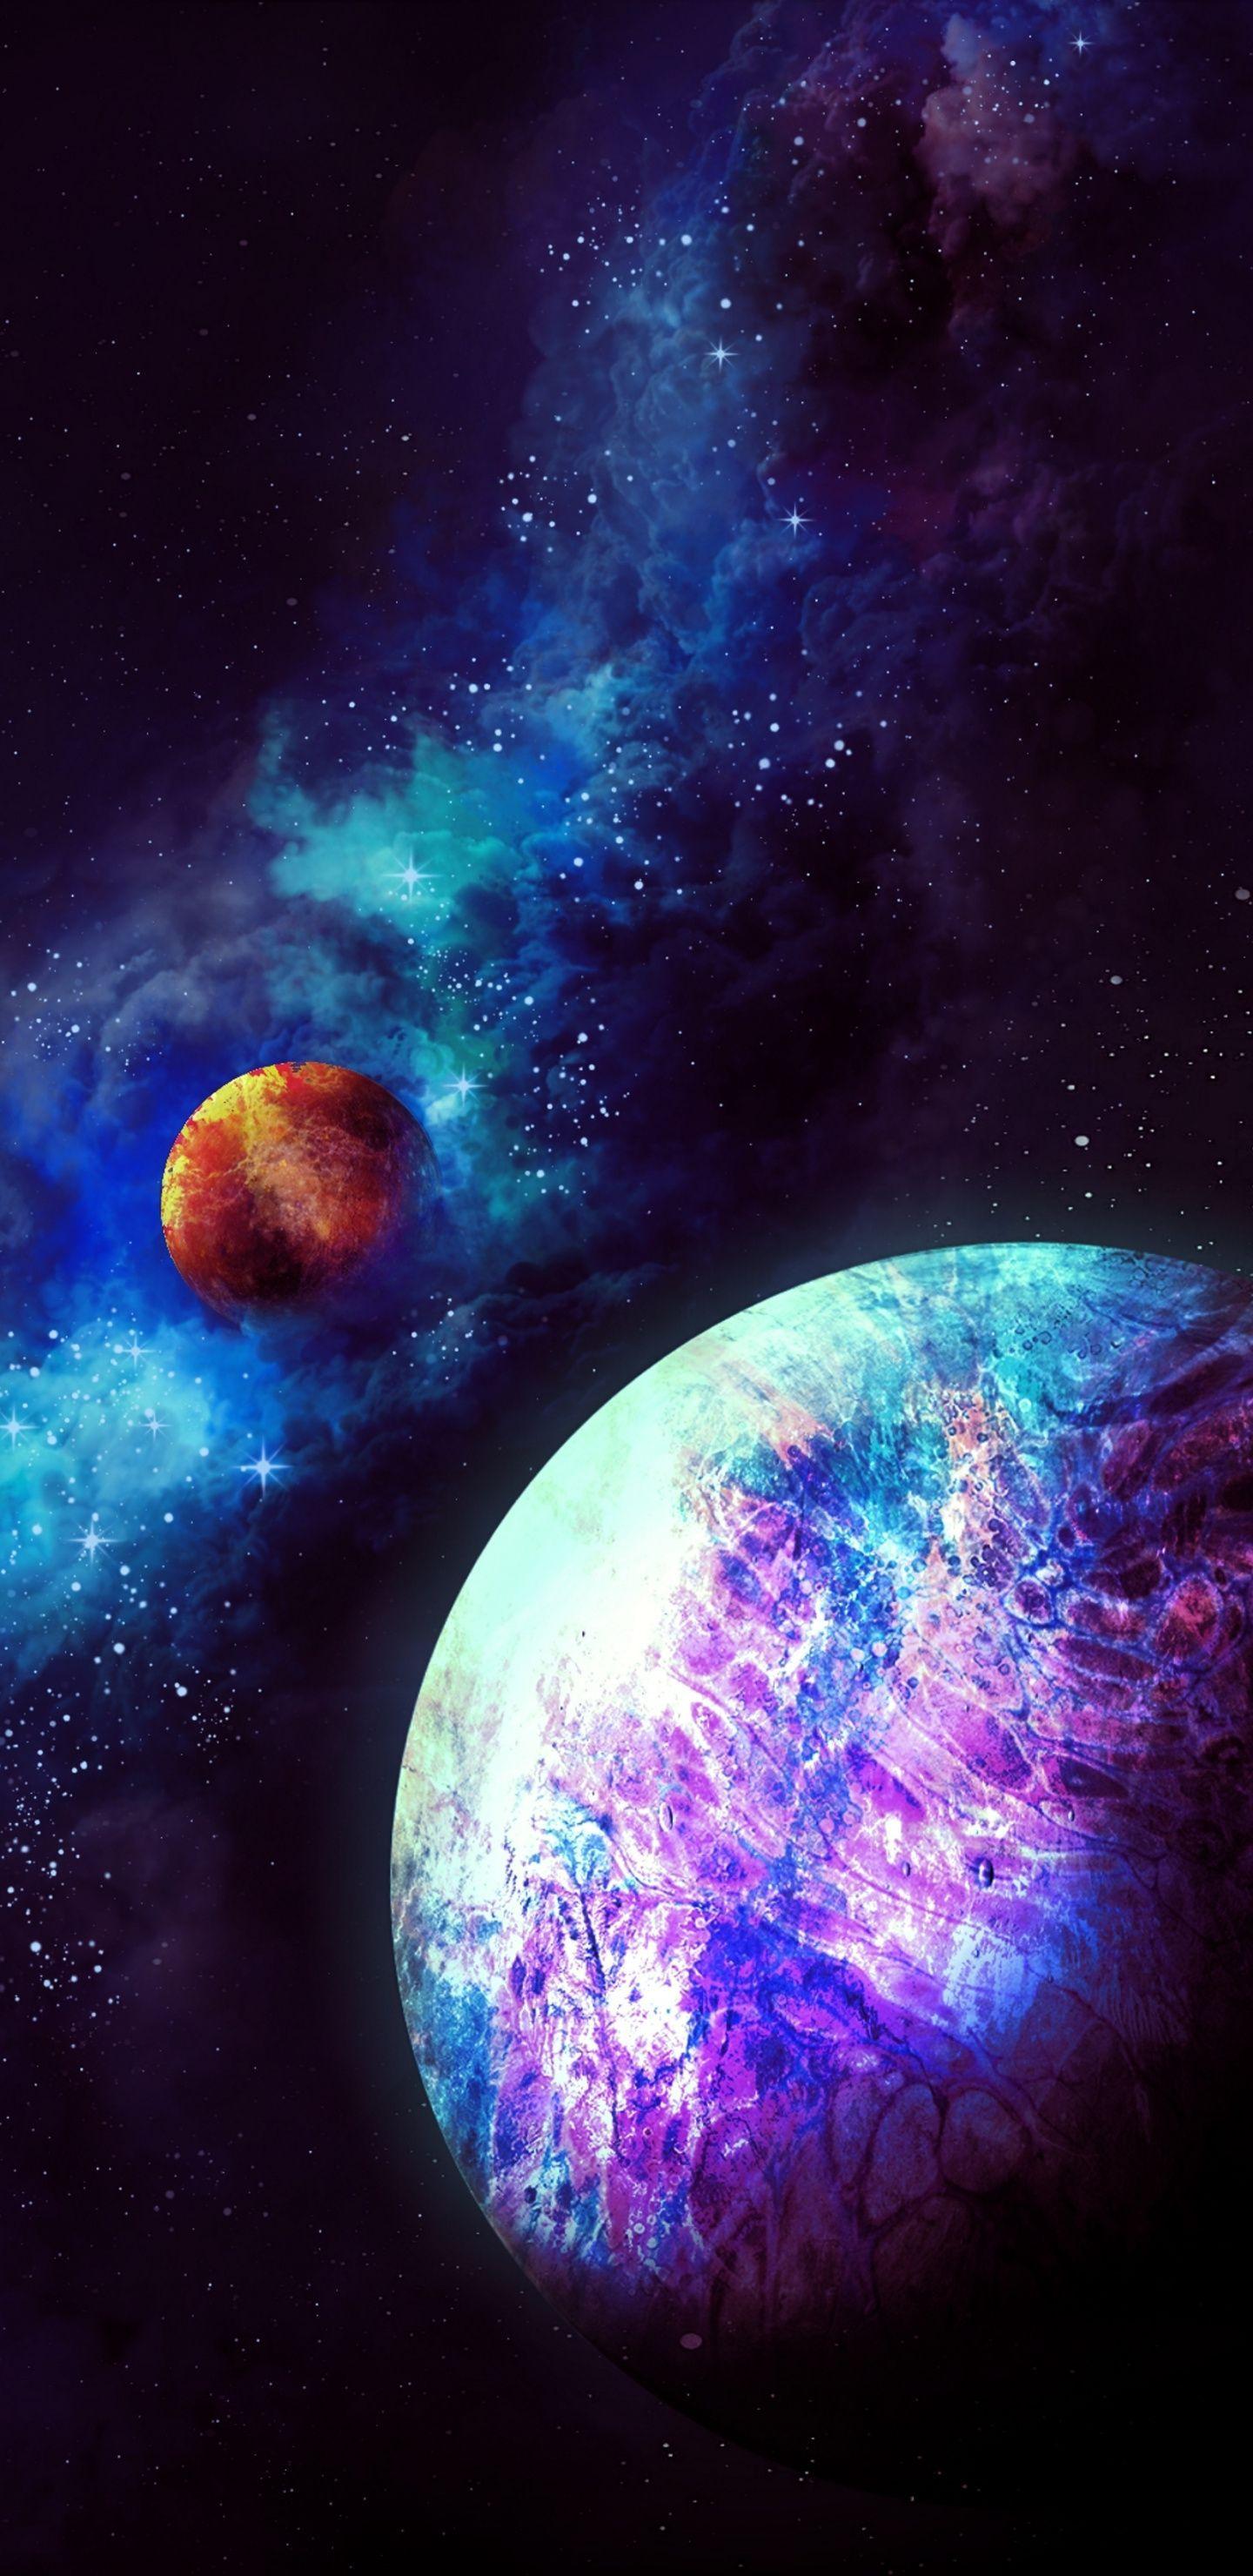 Planetary Nebula Wallpapers - Top Free Planetary Nebula Backgrounds ...